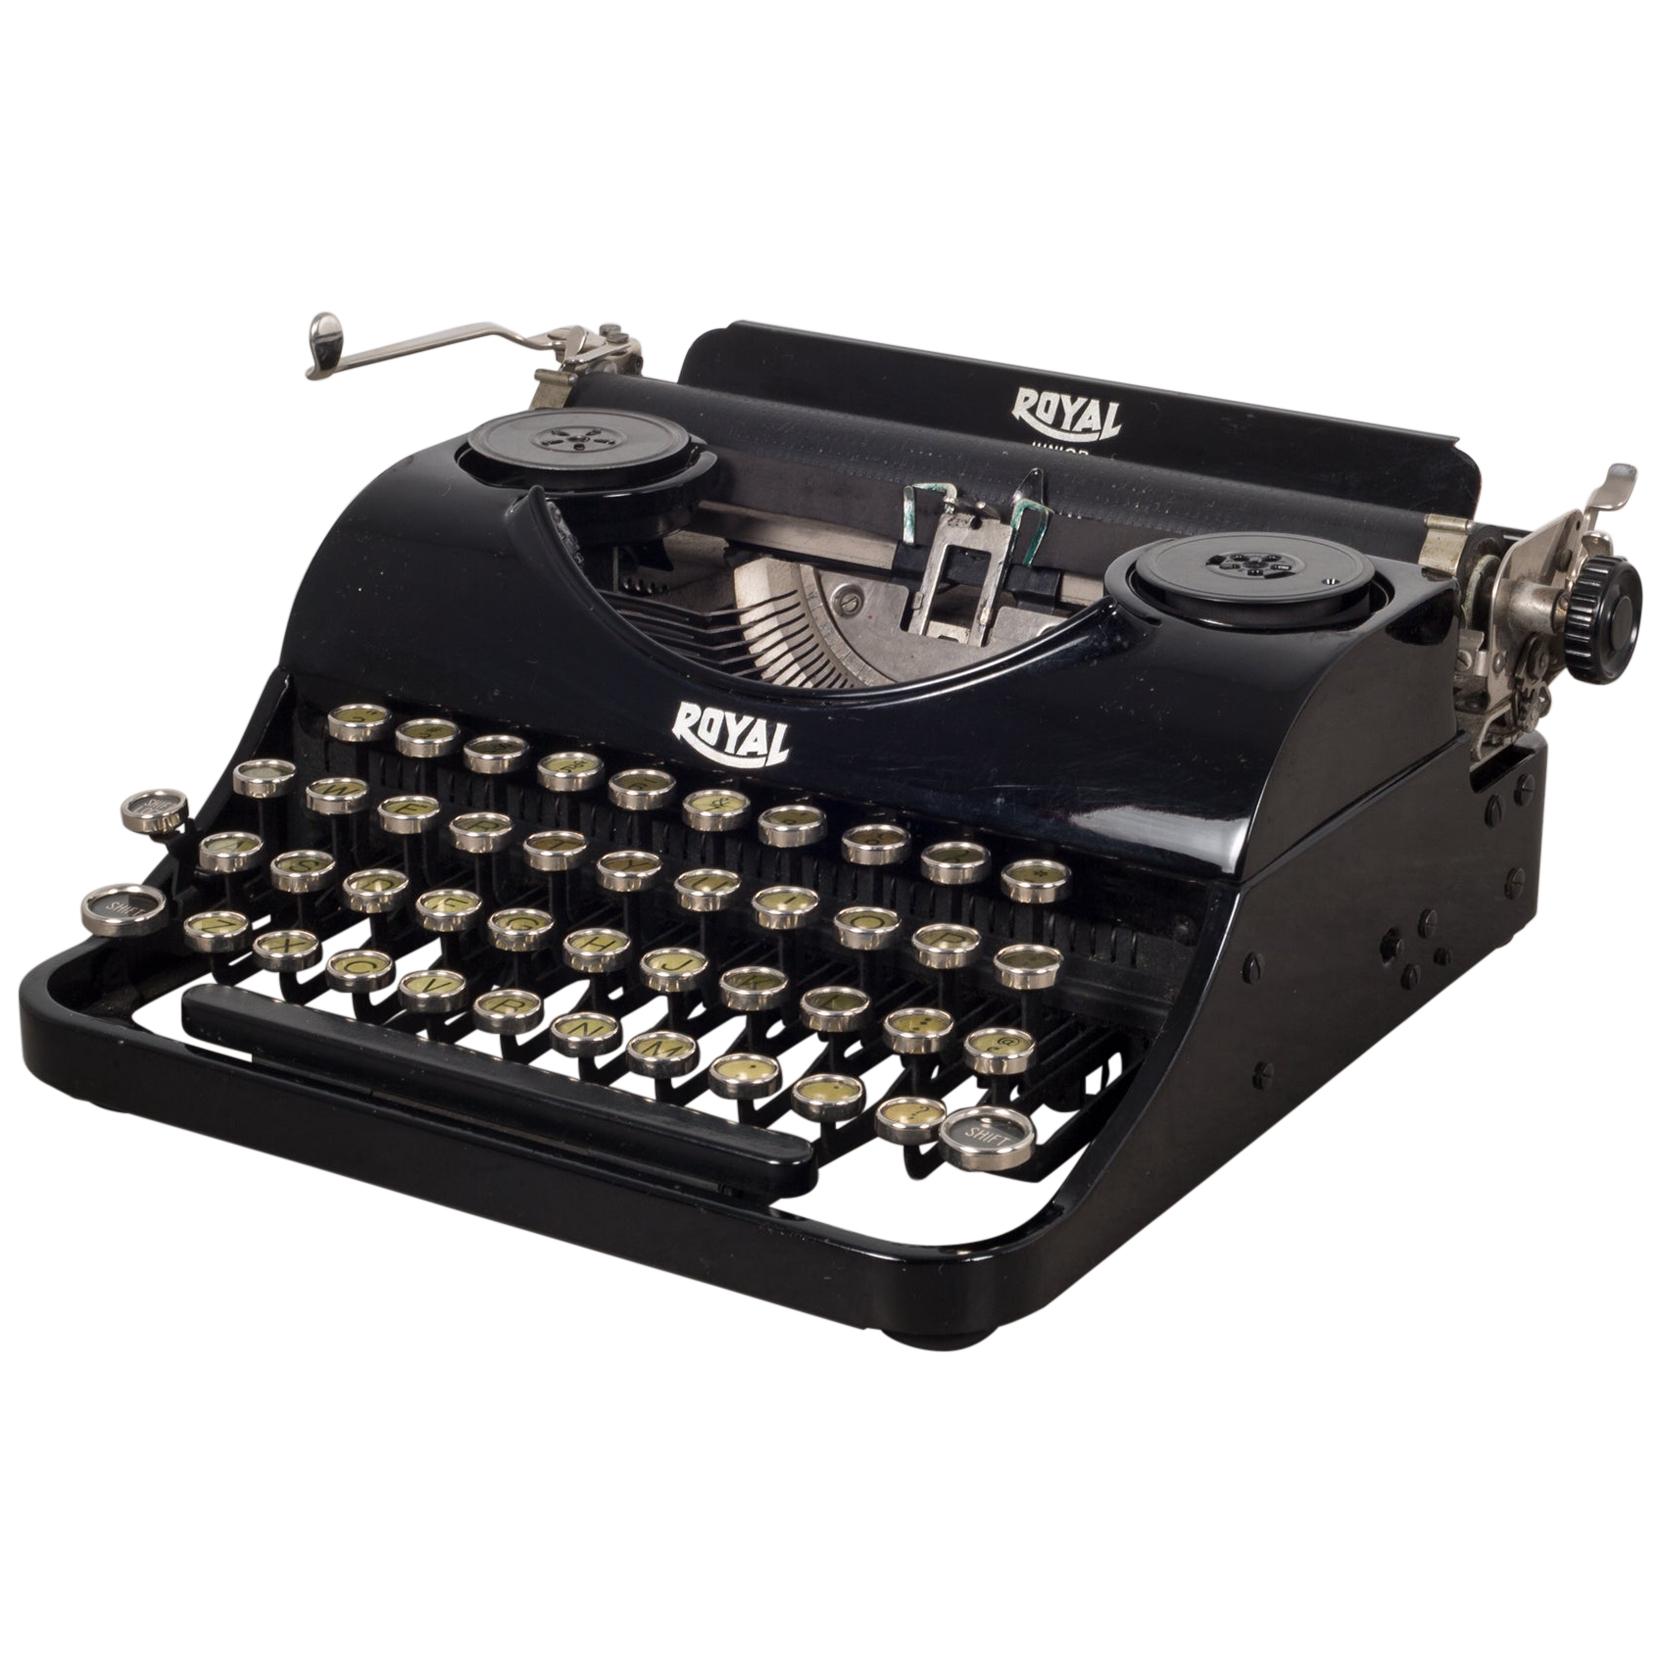 Antique Depression Era Royal Junior Typewriter, circa 1935